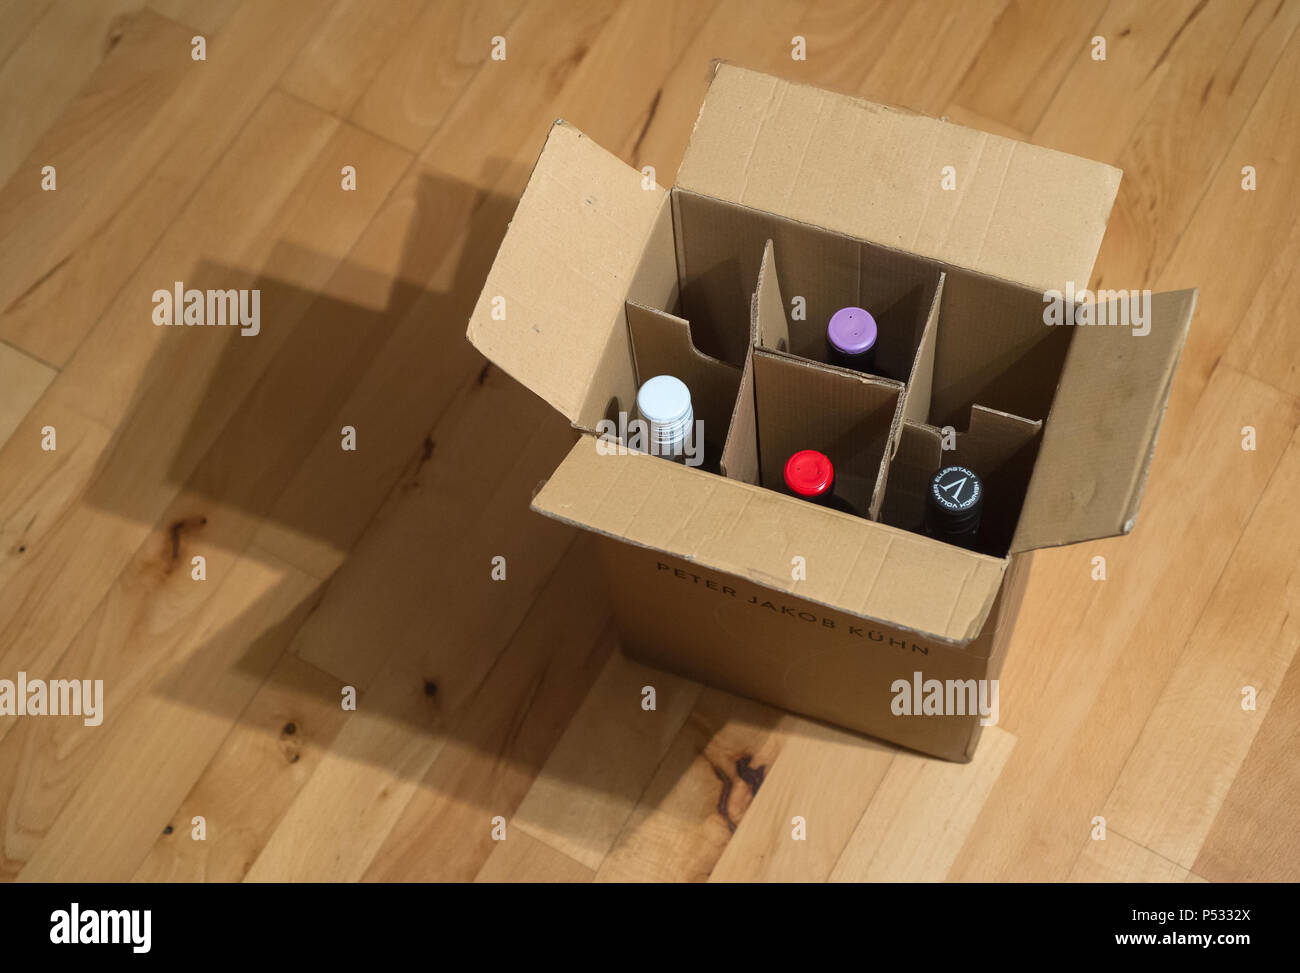 Wein Karton mit Weinflaschen auf einem Parkettboden Stockfoto